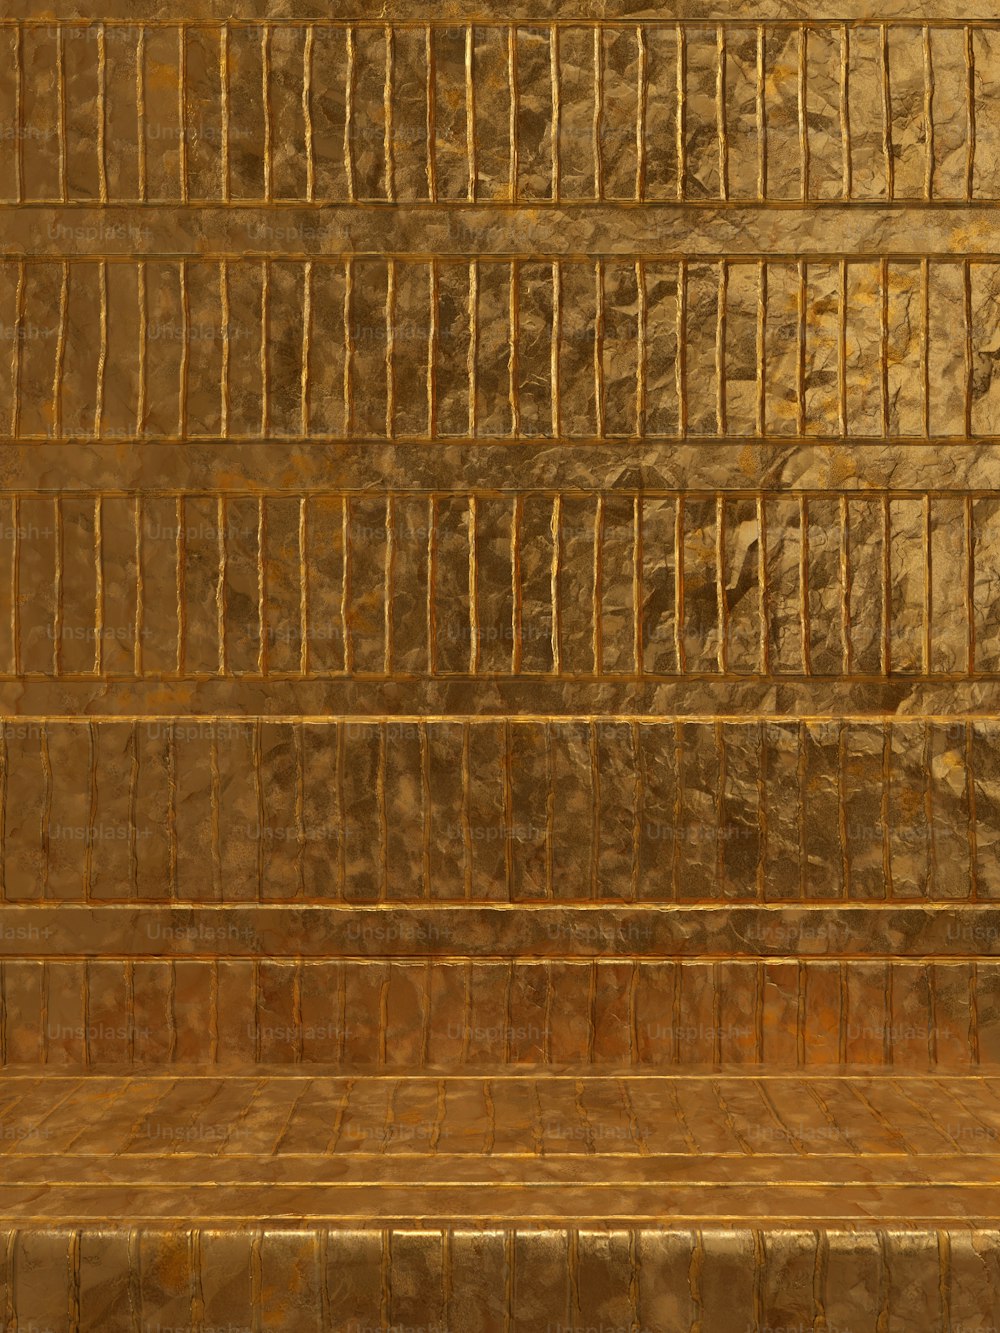 eine goldgekachelte Wand mit einer Bank davor